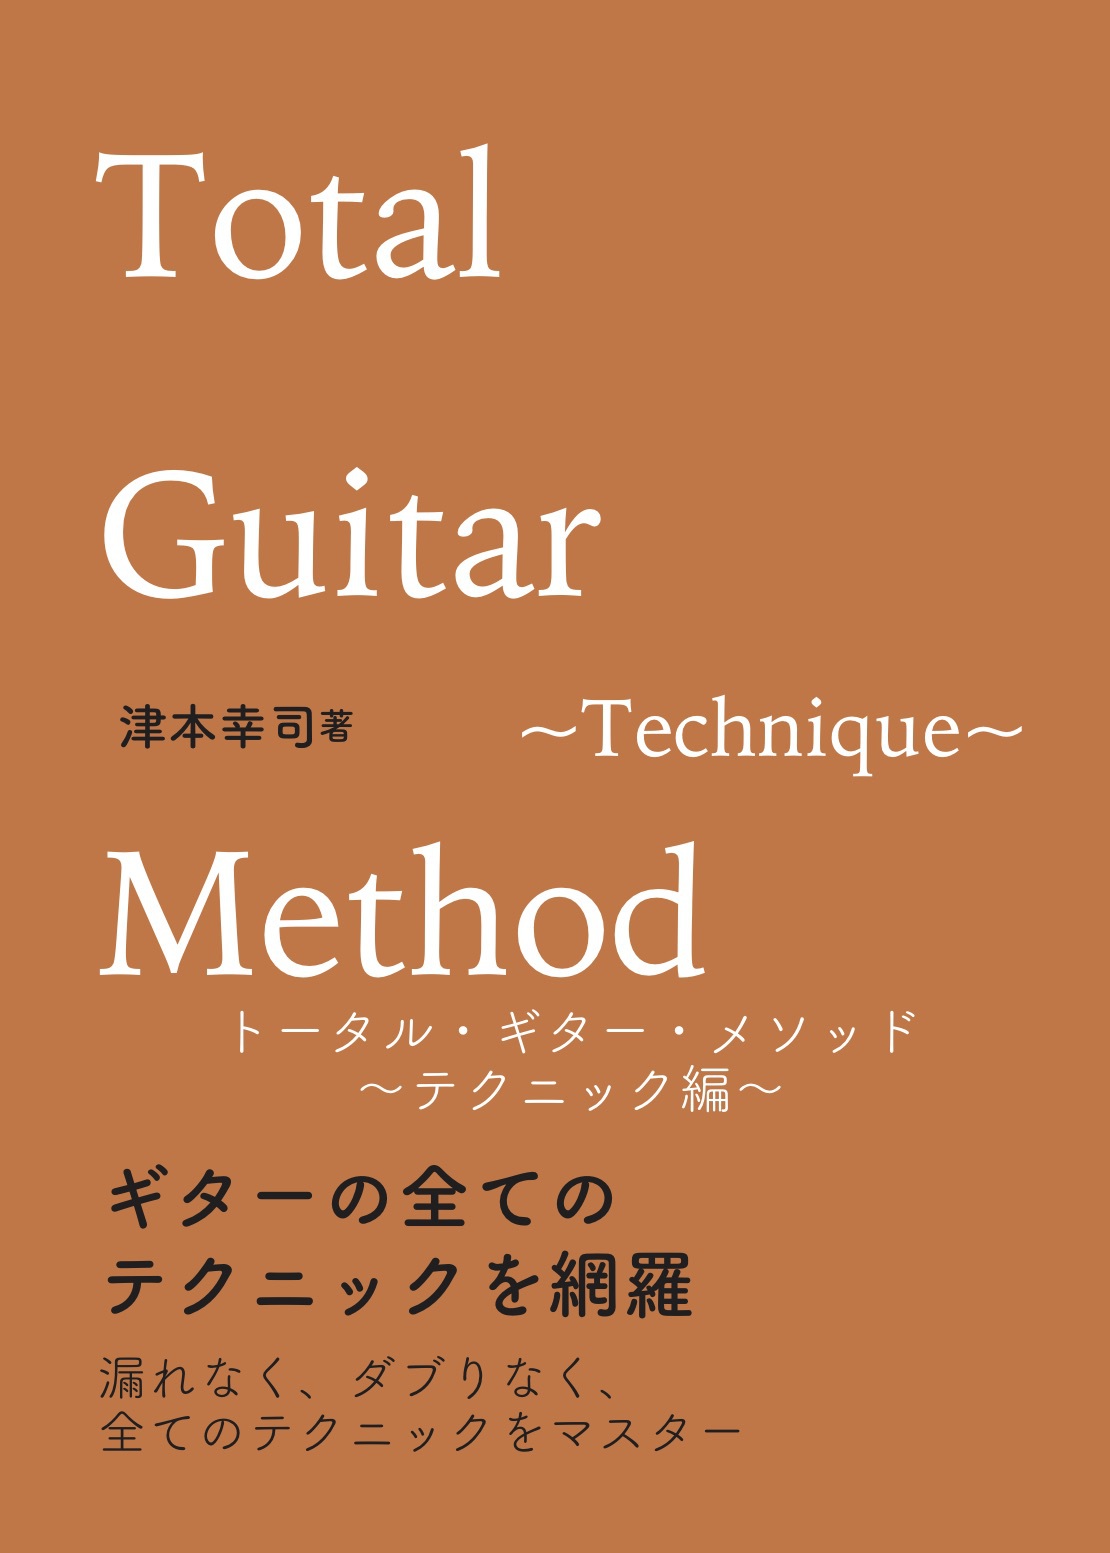 トータル・ギター・メソッド | 総合ギター教則メソッド